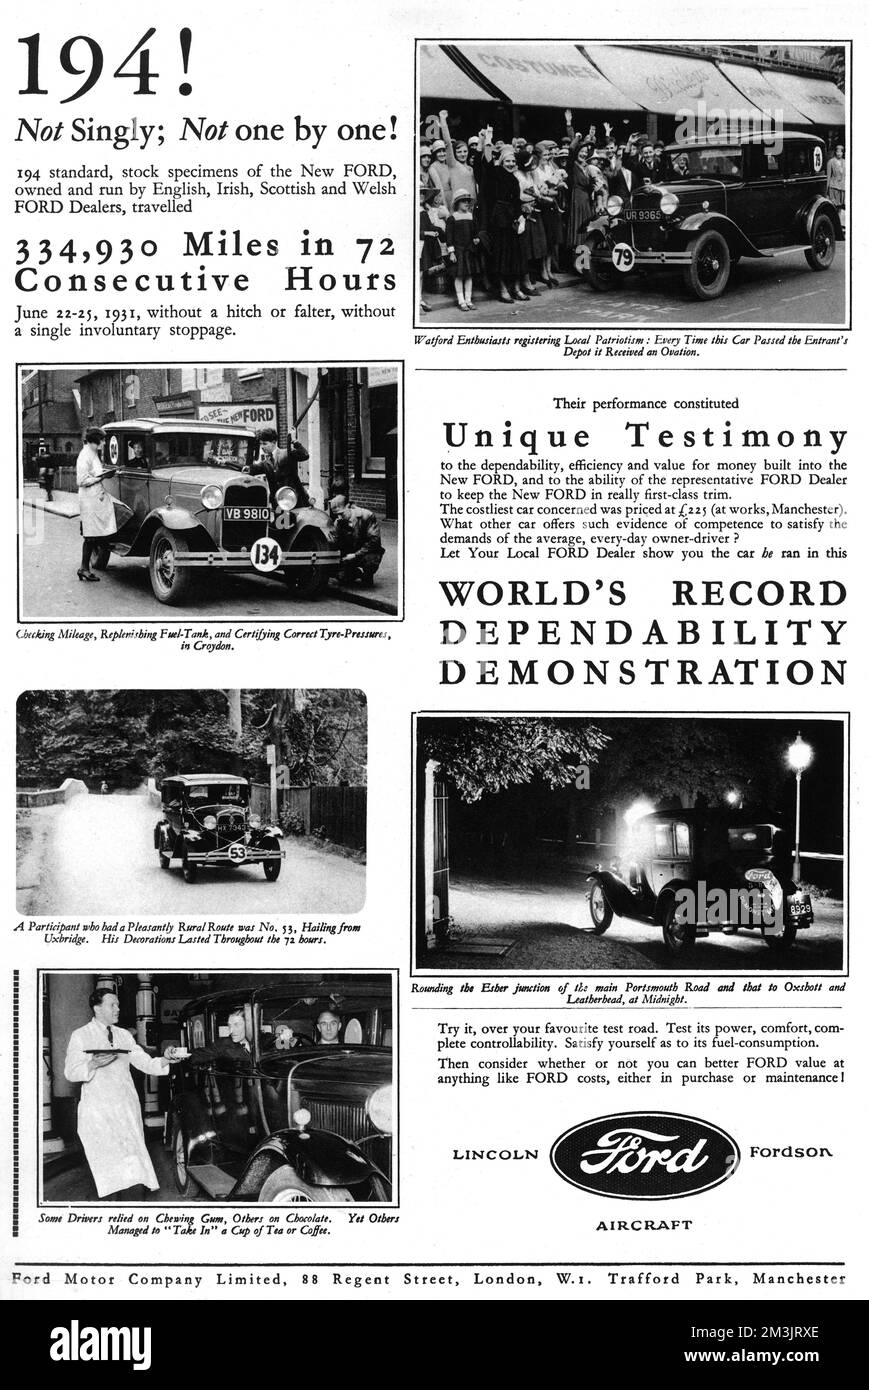 Publicité pleine page pour les voitures Ford avec histoire photo des 334 930 milles conduits dans les voitures Ford plus de 72 heures consécutives. 1931 Banque D'Images